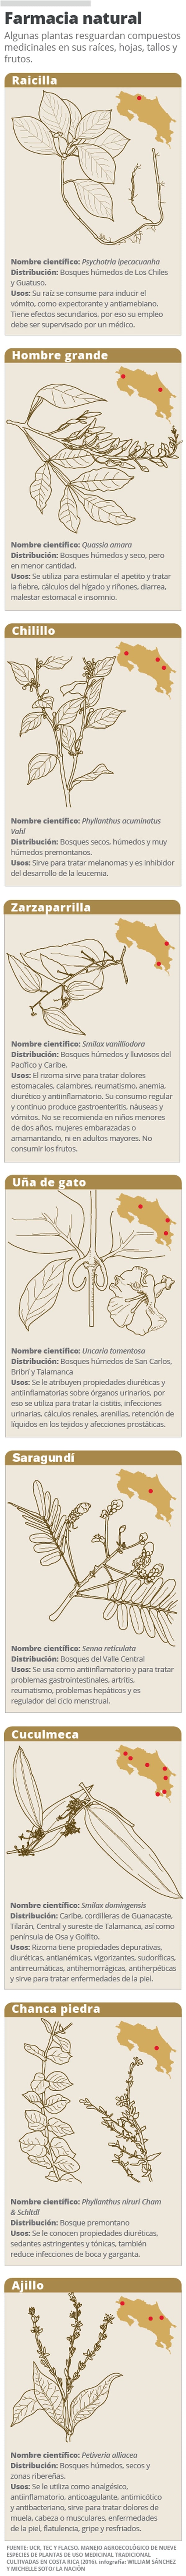 Cientificas De Costa Rica Ponen A Prueba El Poder De Las Plantas